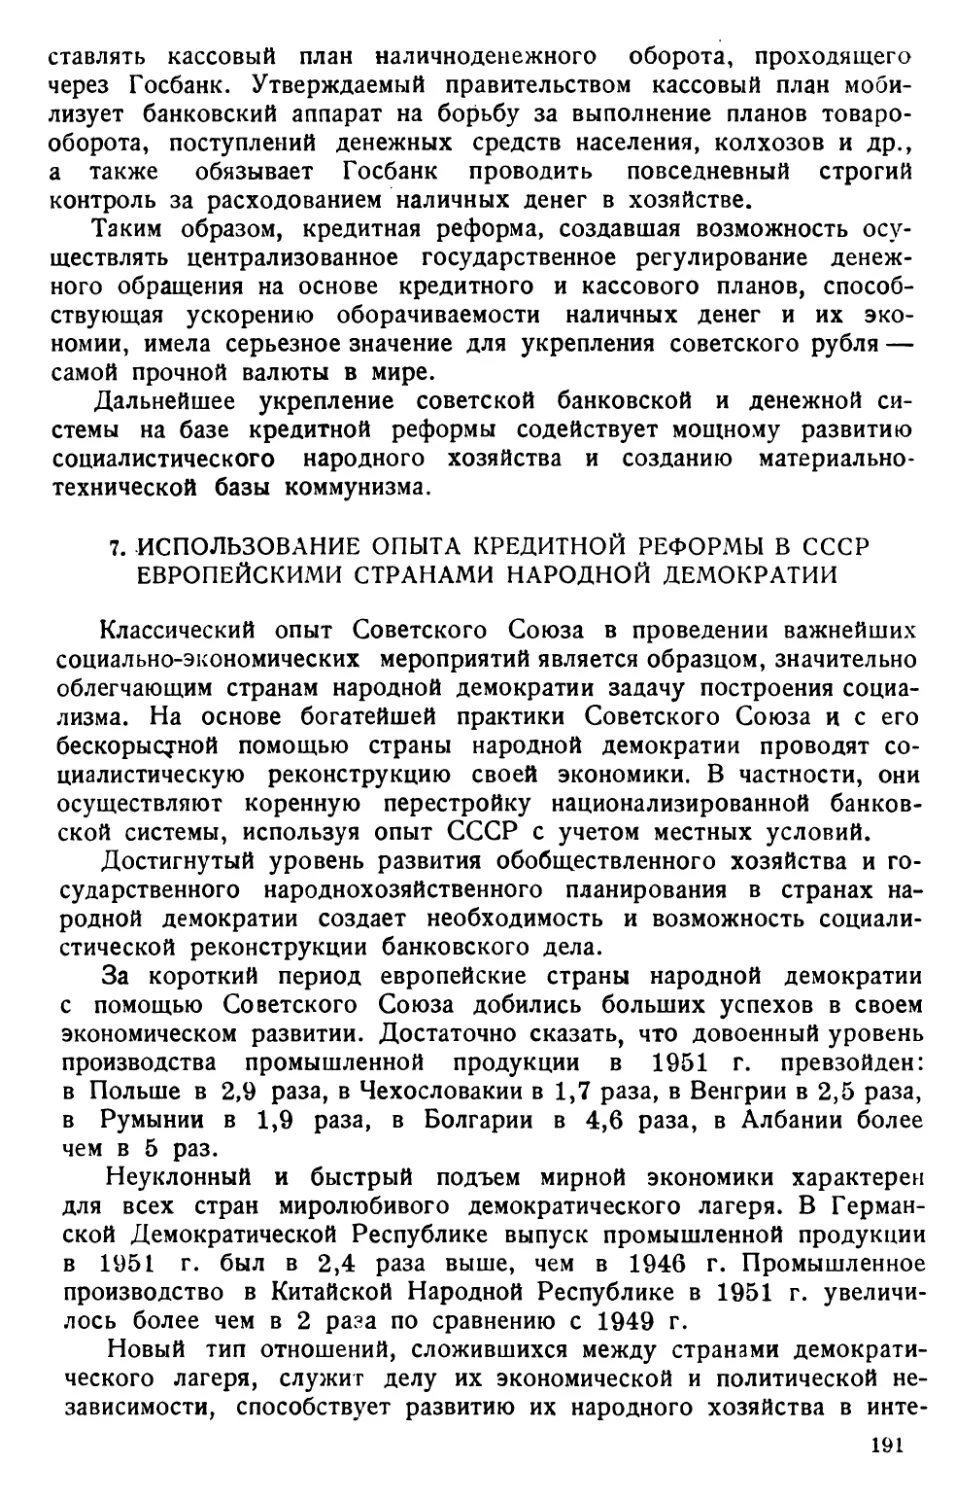 7. Использование опыта кредитной реформы в СССР европейскими странами народной демократии